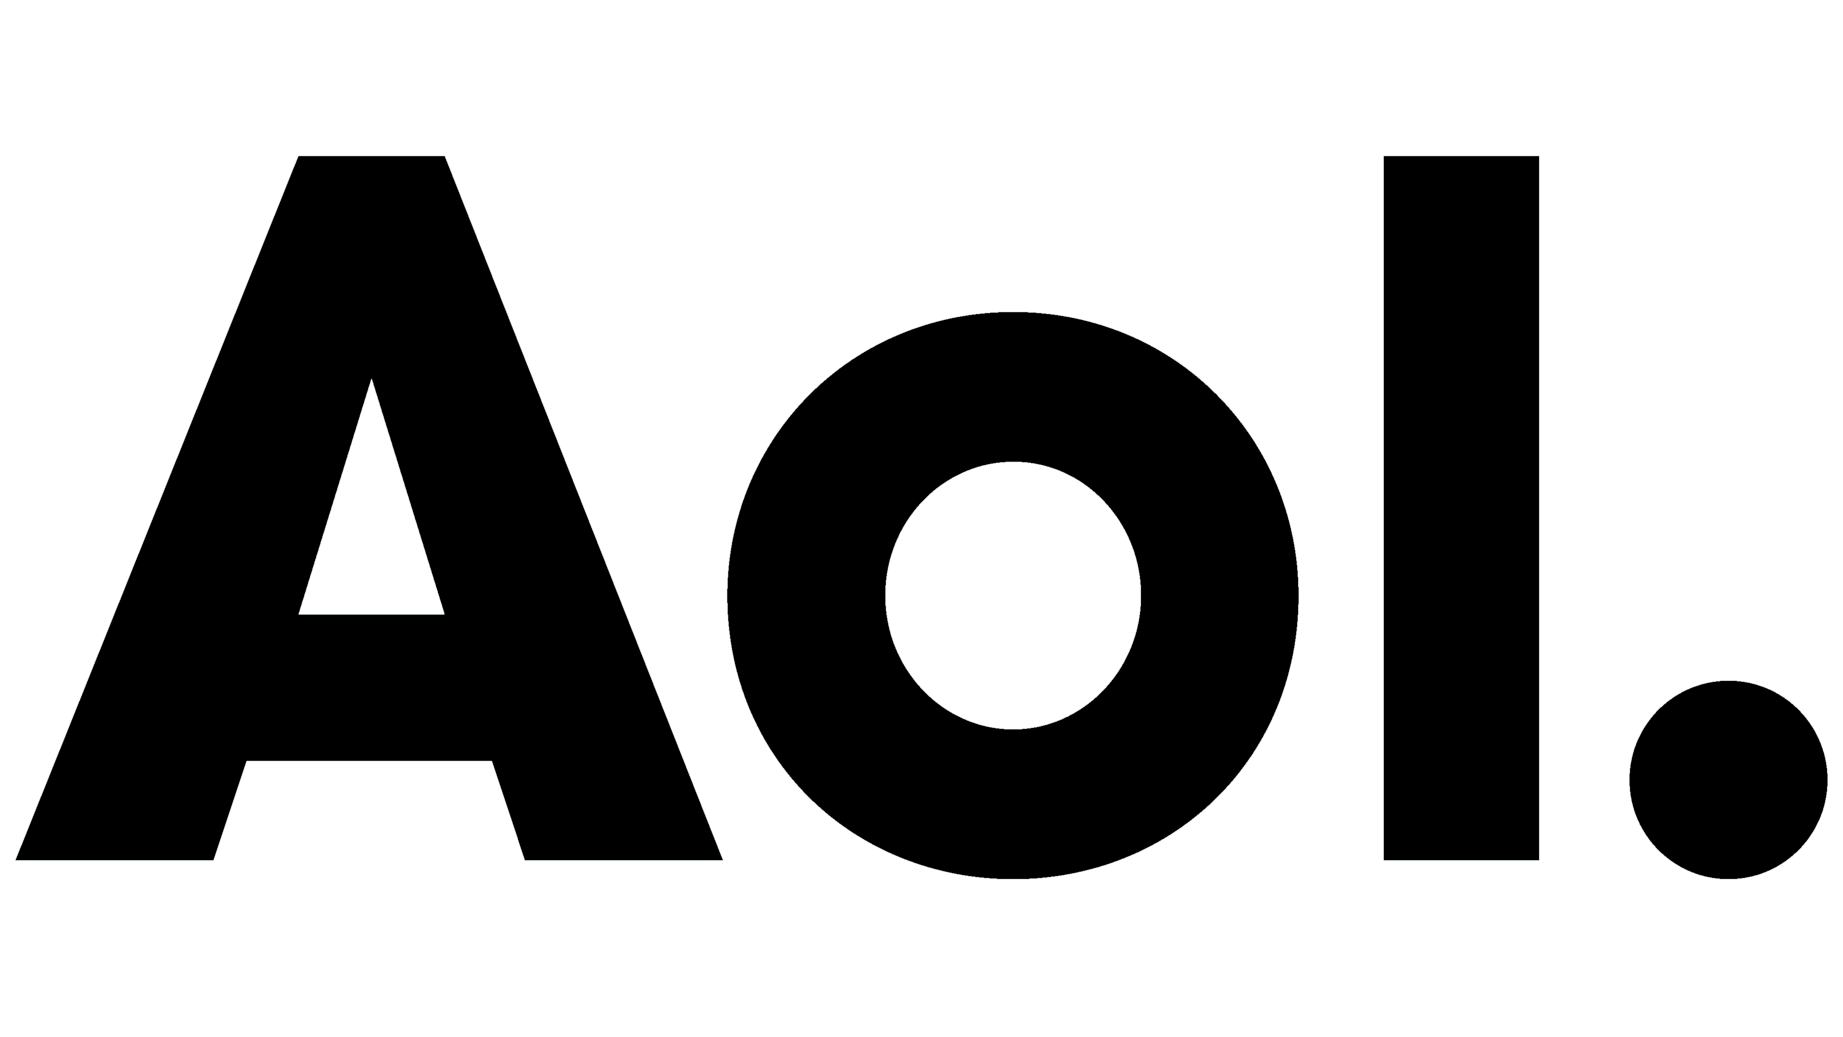 Aol symbol